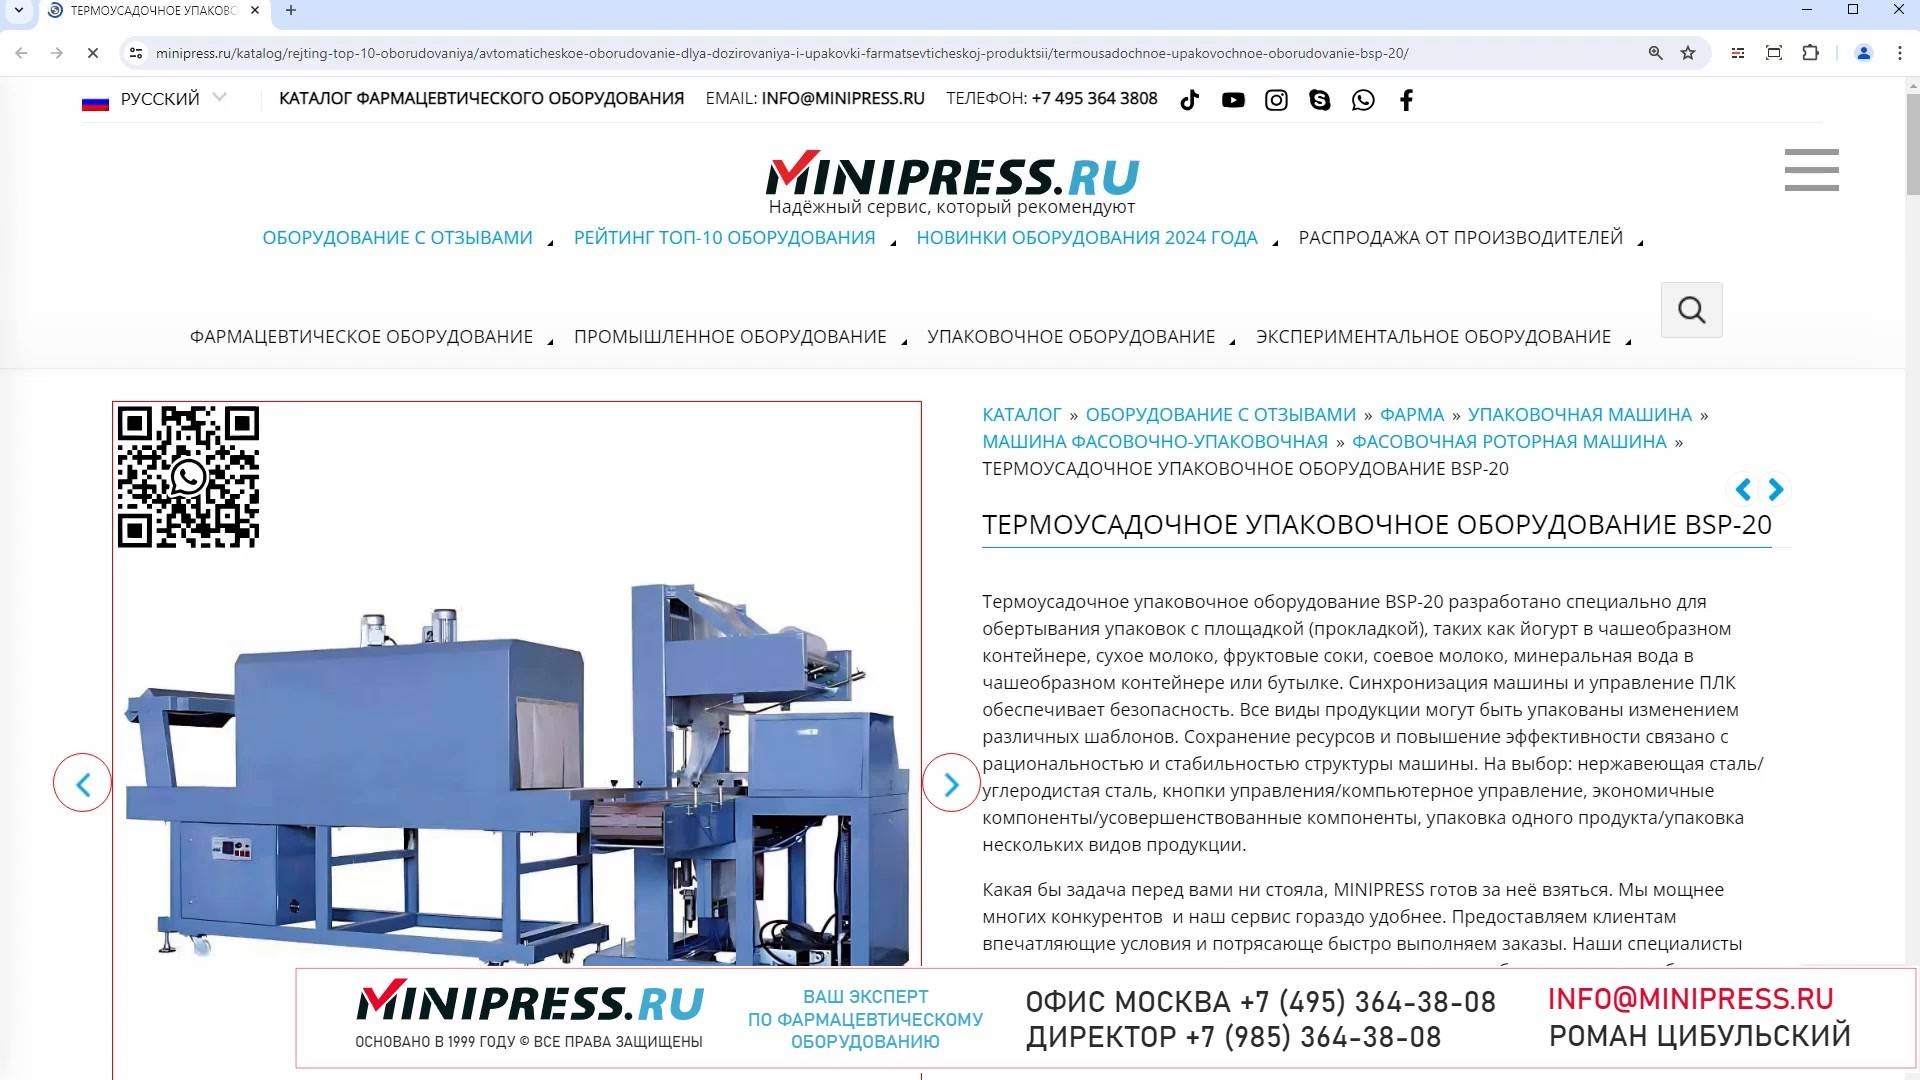 Minipress.ru Термоусадочное упаковочное оборудование BSP-20